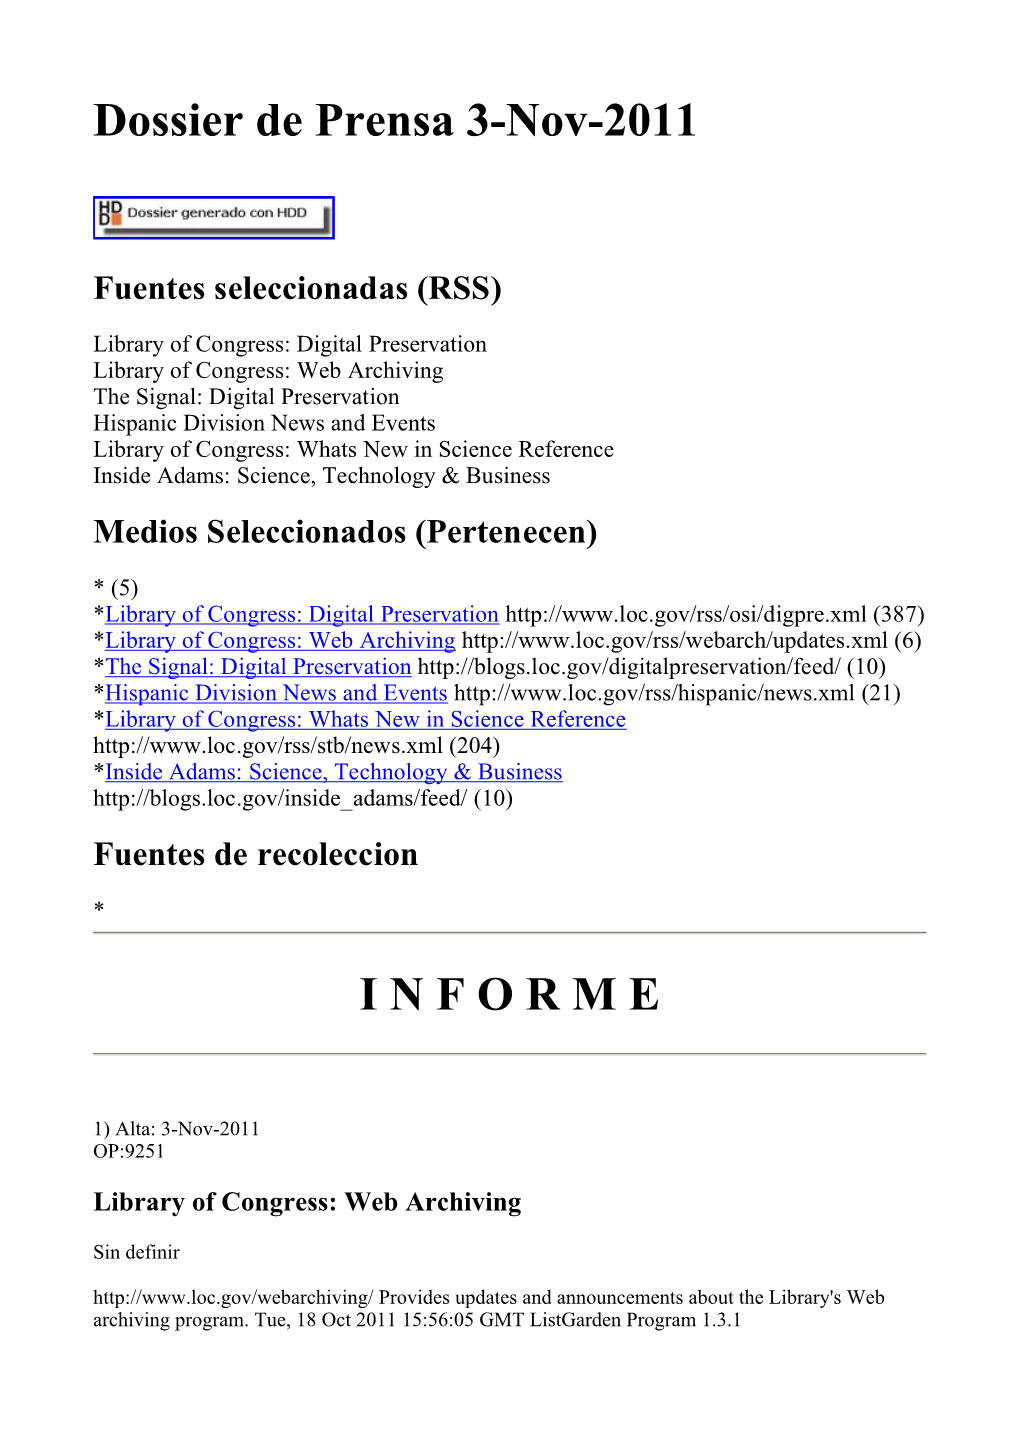 Dossier De Prensa 3-Nov-2011 I N F O R